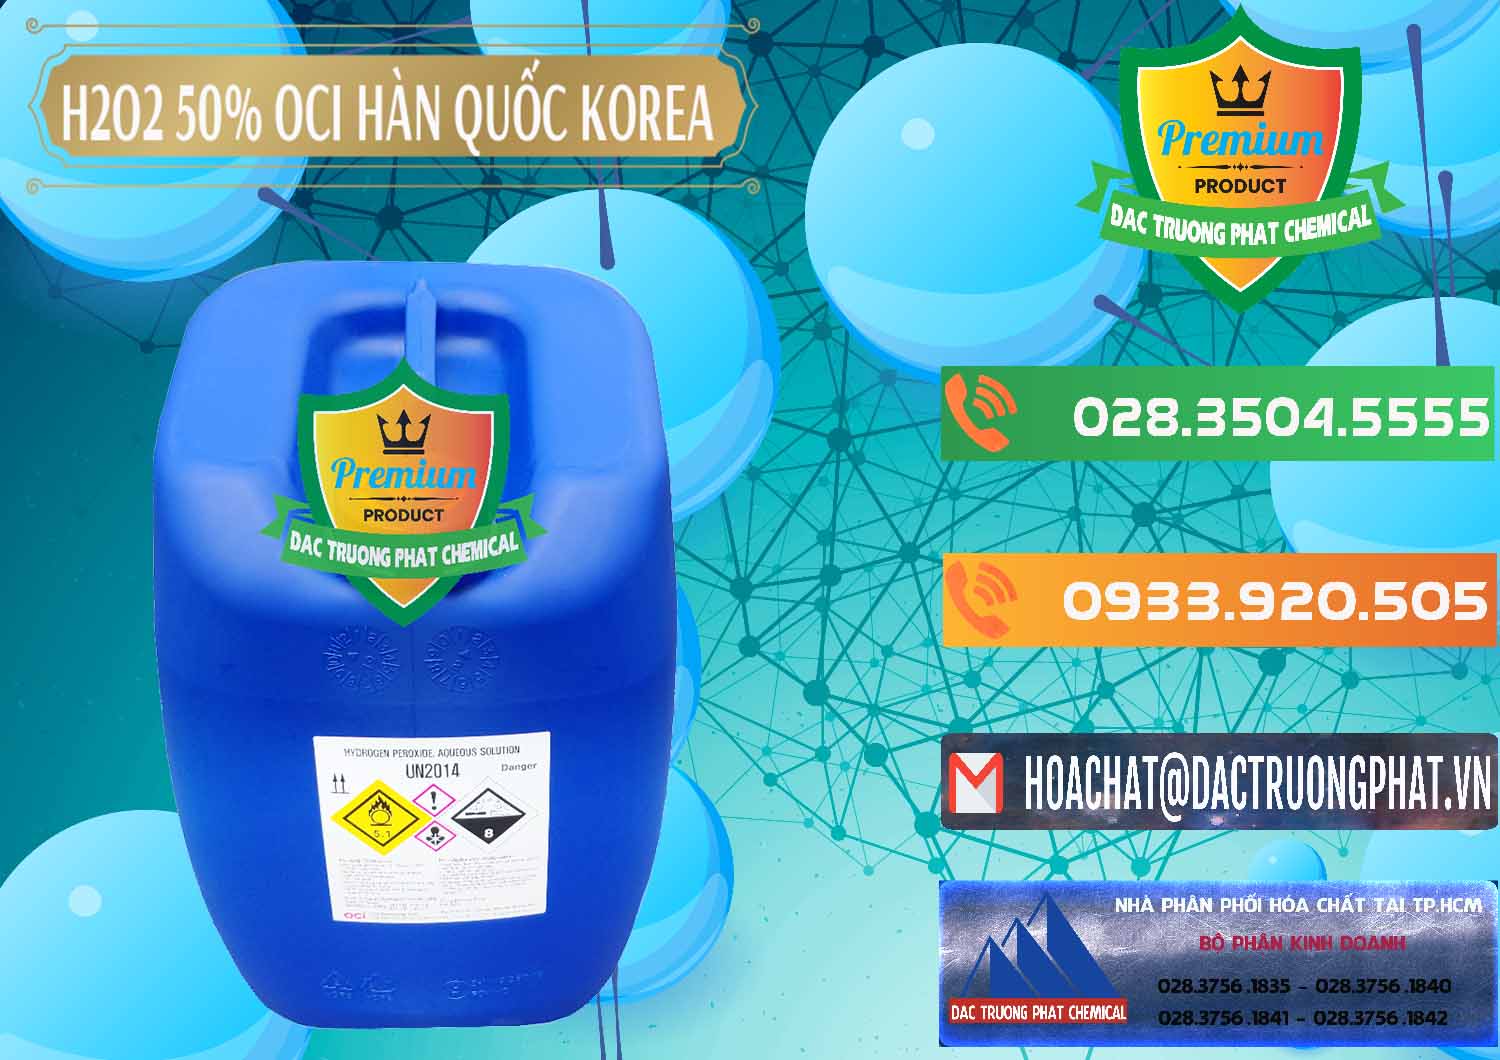 Cty chuyên cung cấp ( bán ) H2O2 - Hydrogen Peroxide 50% OCI Hàn Quốc Korea - 0075 - Chuyên cung cấp ( phân phối ) hóa chất tại TP.HCM - hoachatxulynuoc.com.vn